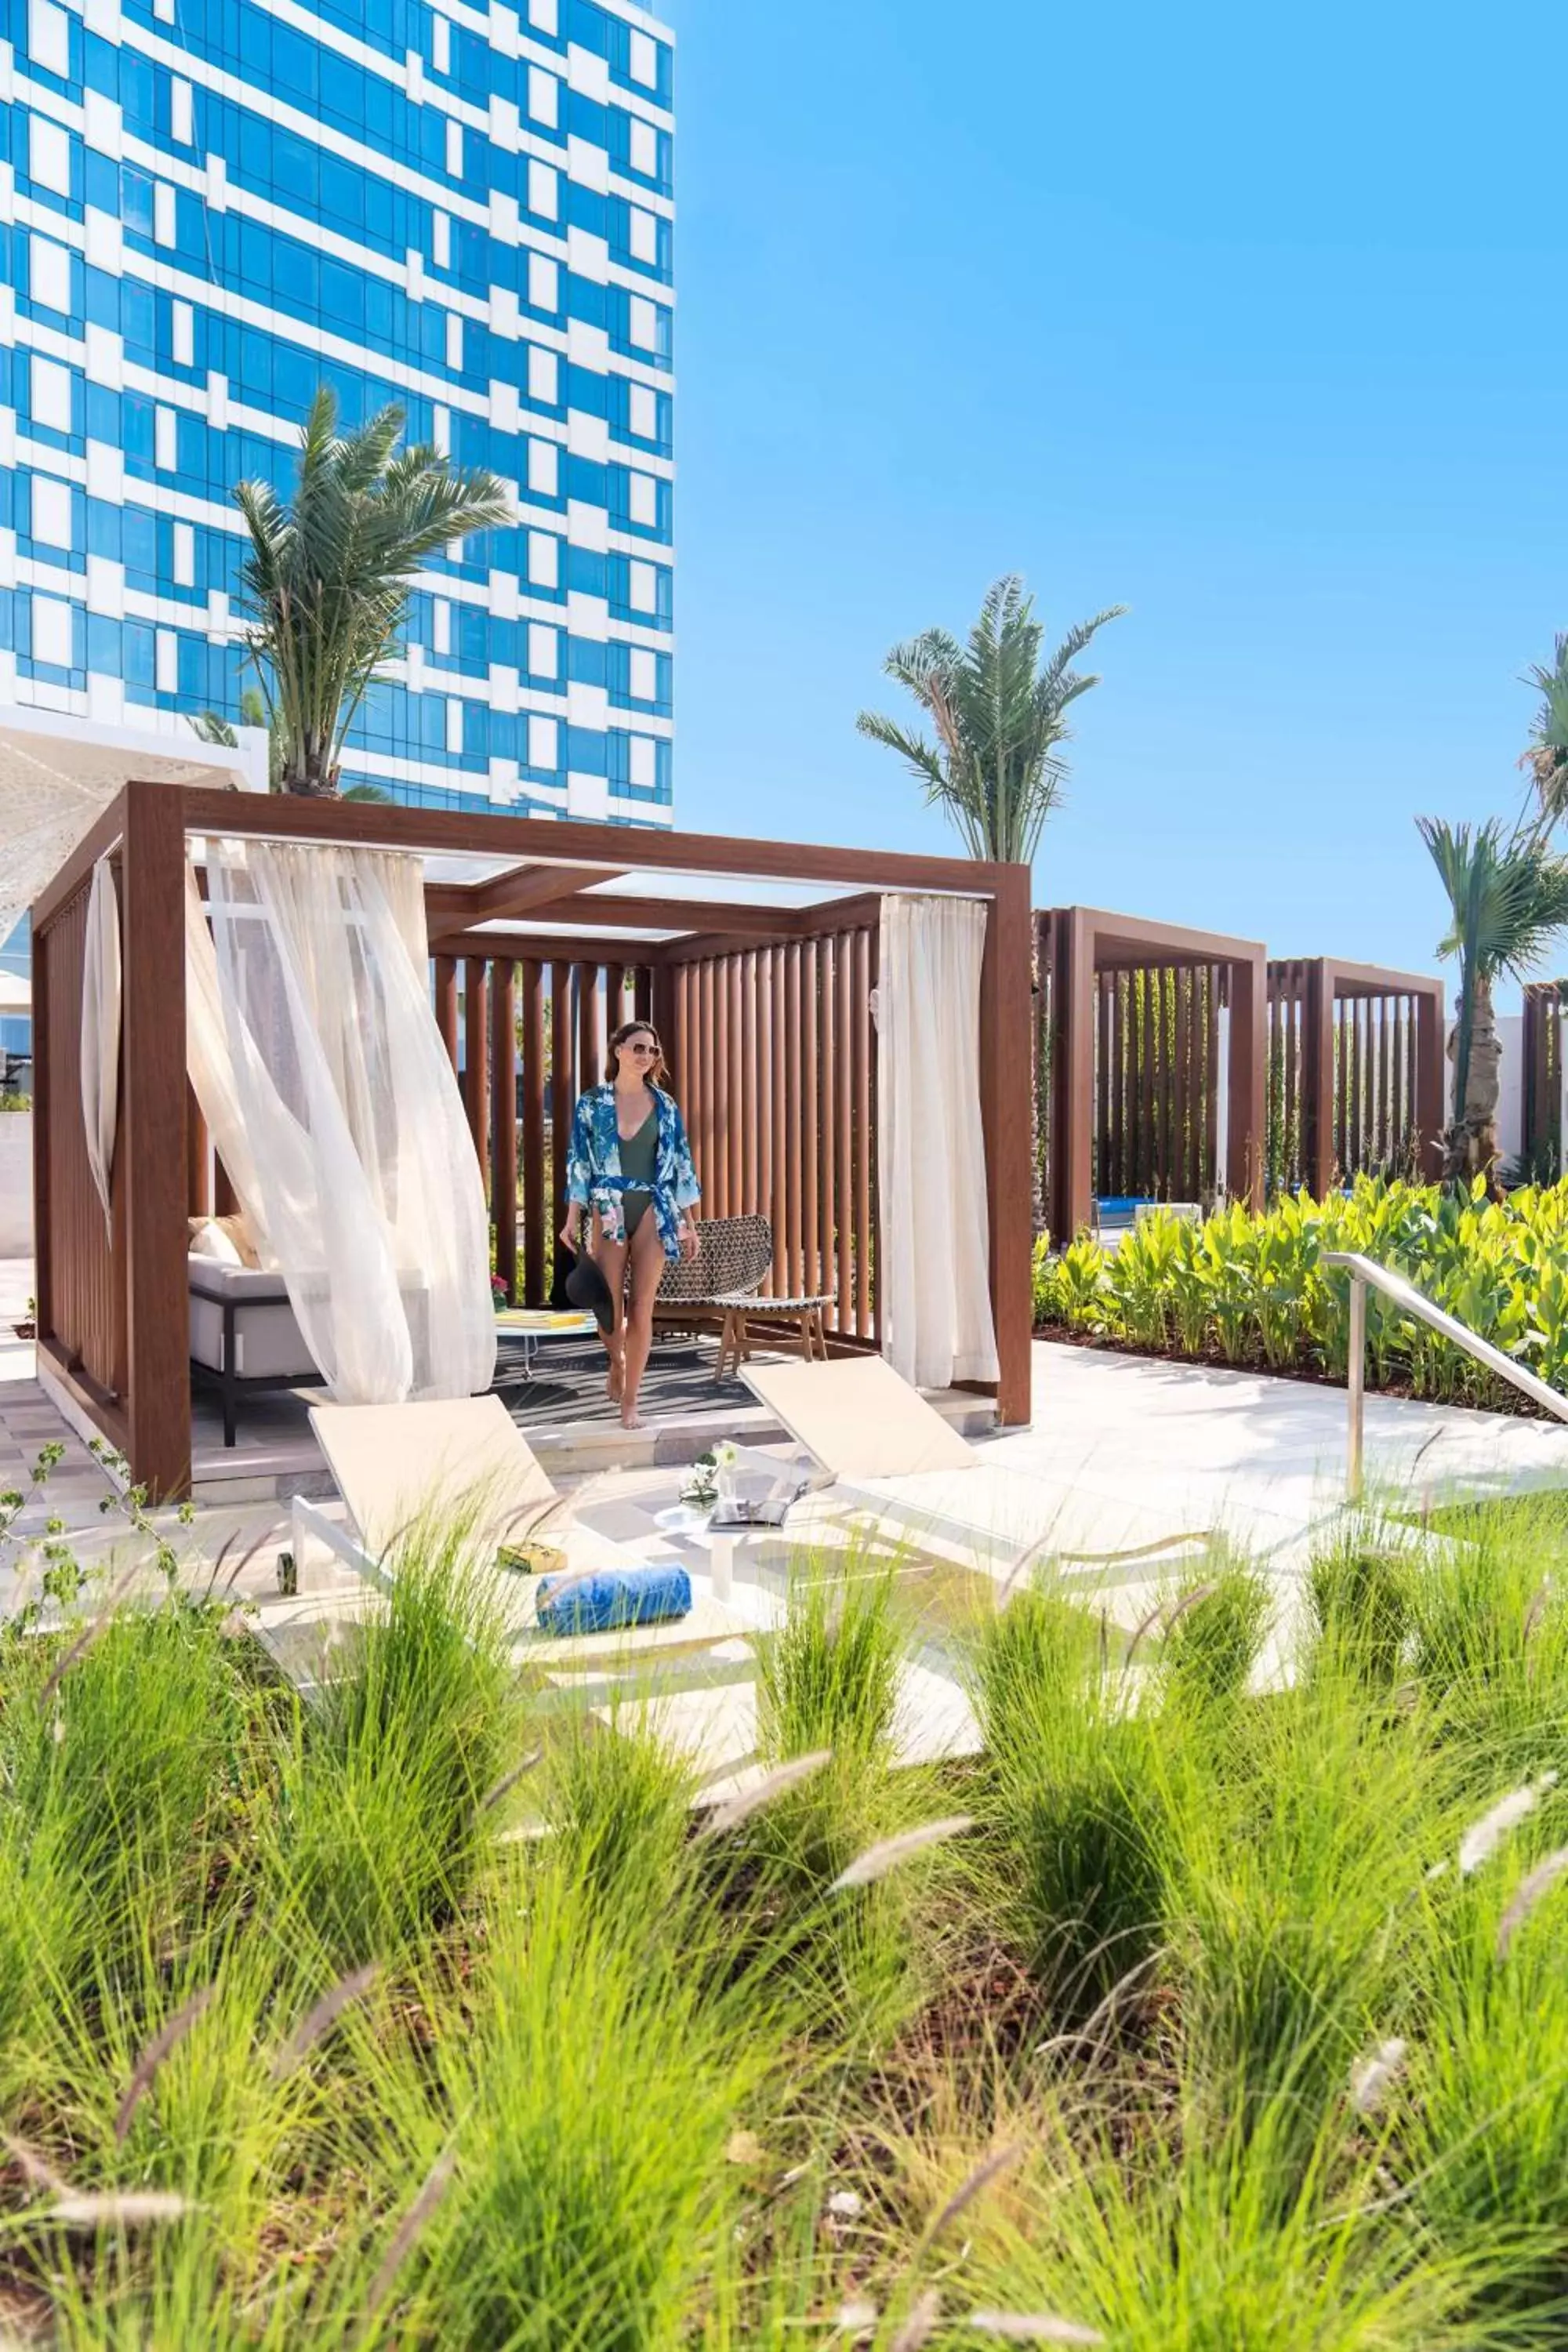 Property building in Rixos Gulf Hotel Doha - All Inclusive